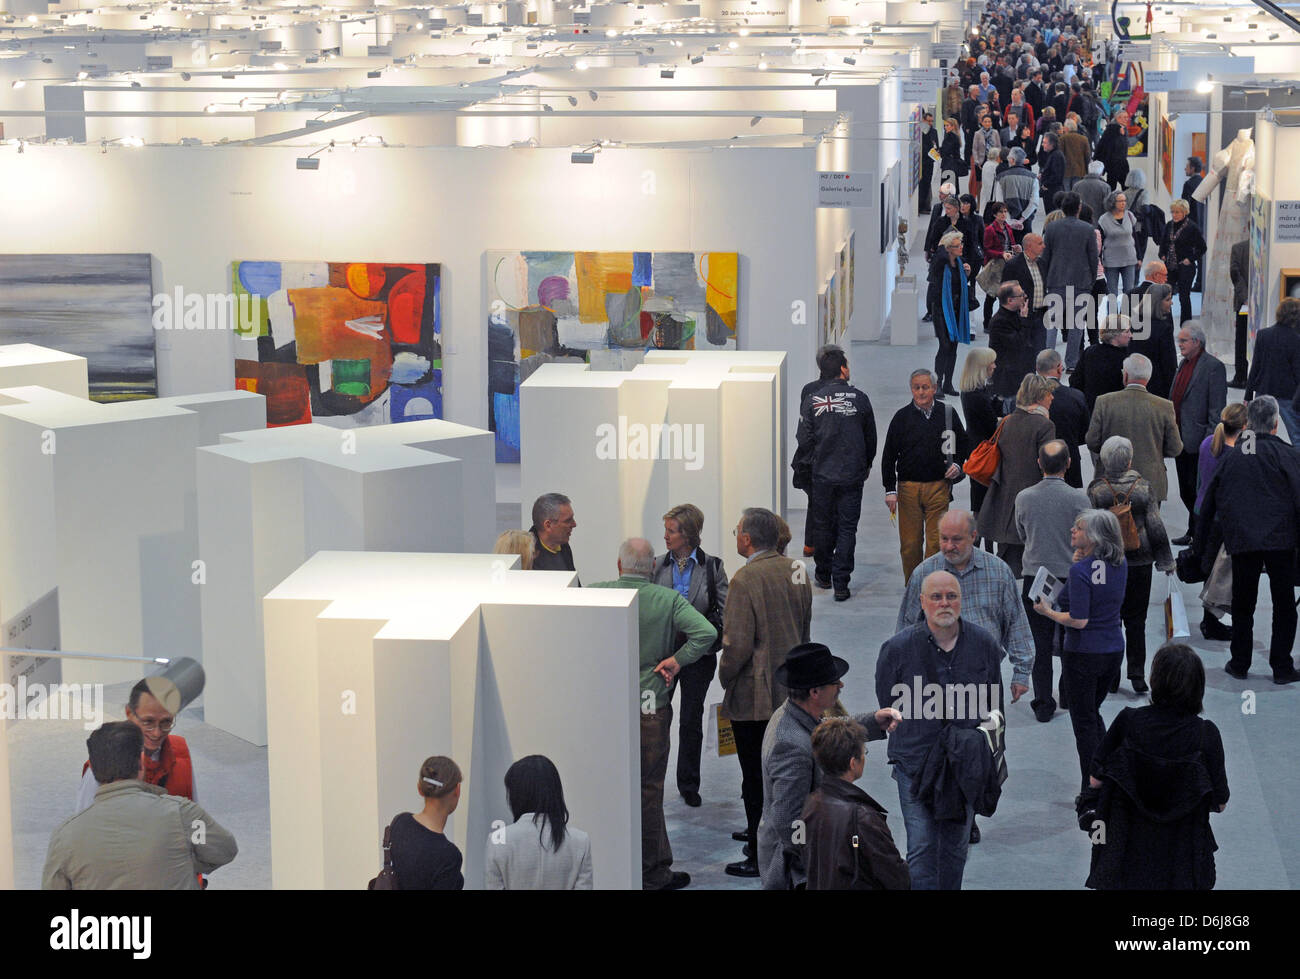 Molti visitatori partecipare all'apertura del nono arte Karlsruhe art fair a Karlsruhe, Germania, 07 marzo 2012. 222 gallerie saranno mostra circa 30.000 opere da 1.500 artisti provenienti da 08 fino a 11 marzo. Foto: ULI DECK Foto Stock